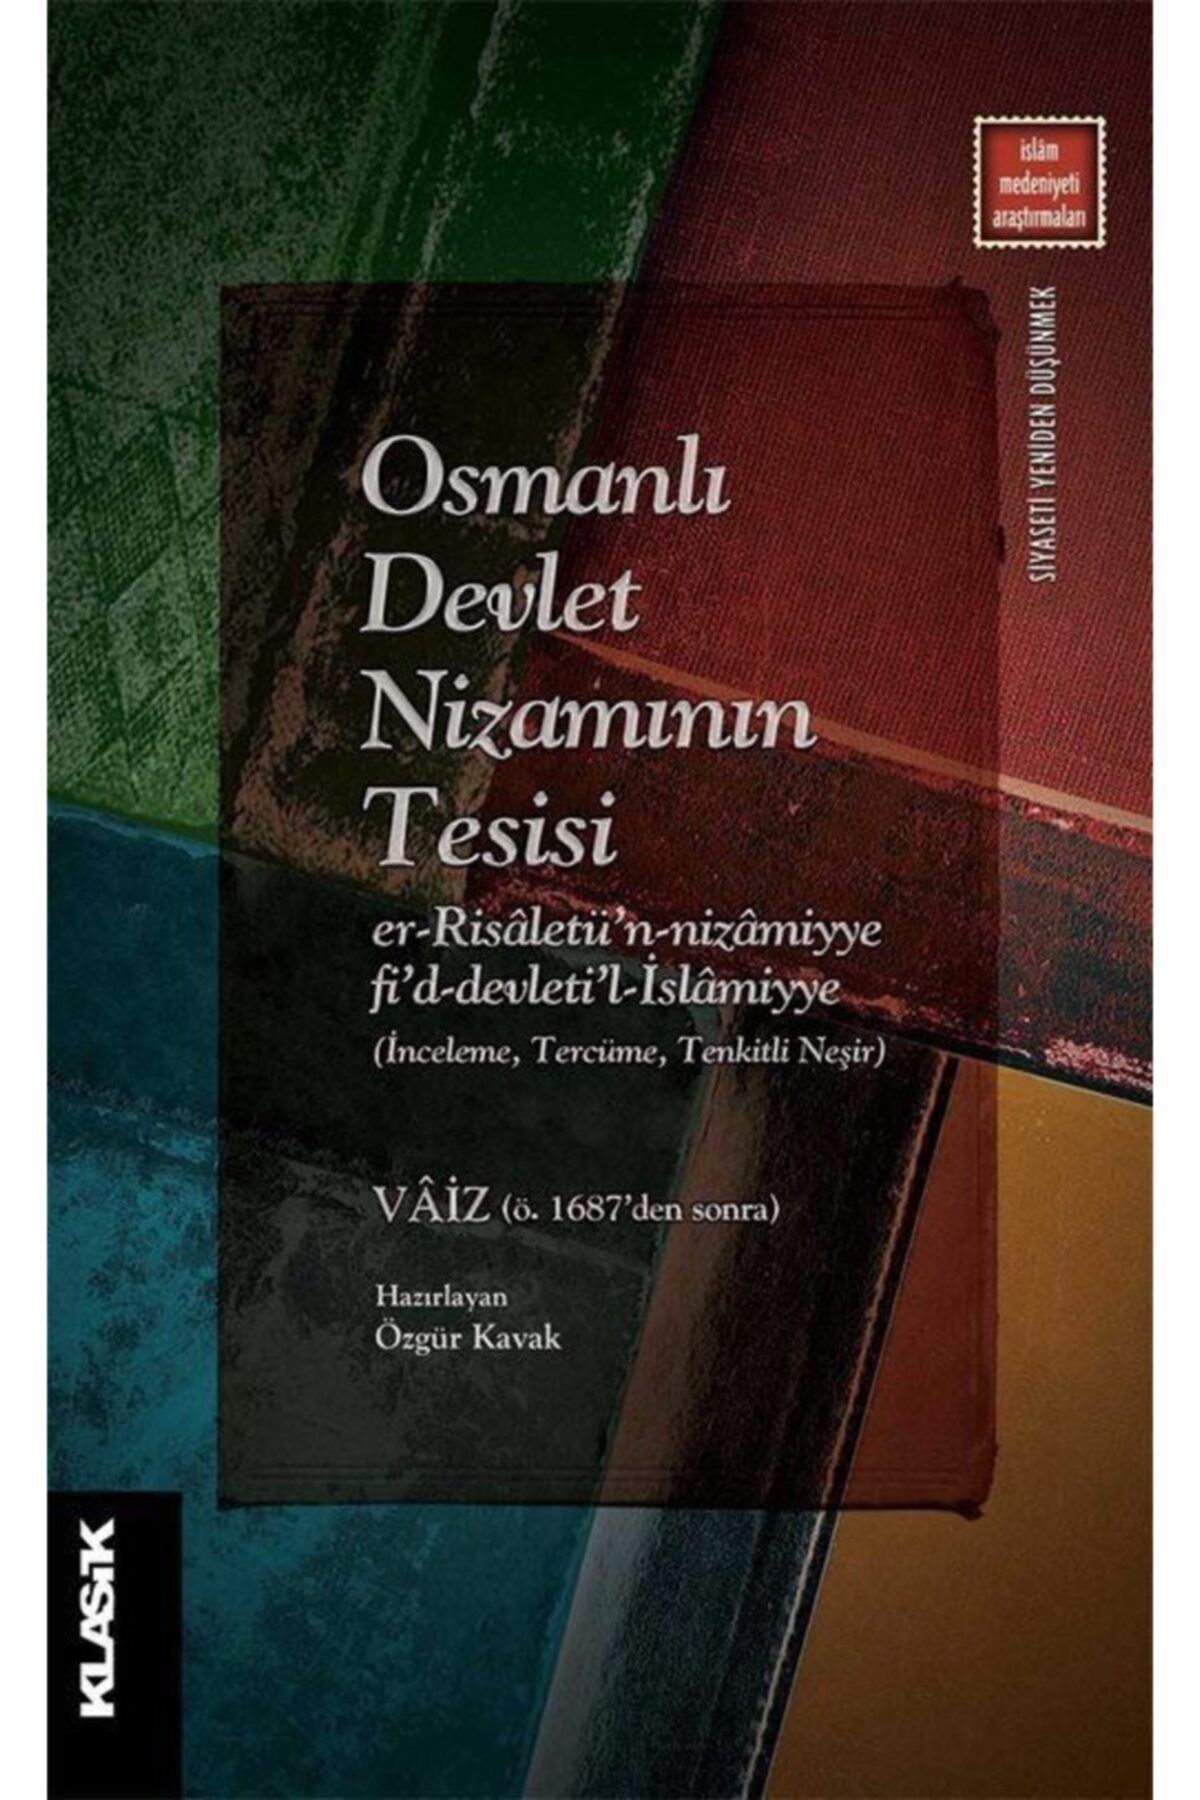 Klasik Yayınları Osmanlı Devlet Nizamının Tesisi, Vaiz, , Osmanlı Devlet Nizamının Tesisi Kitabı, 22